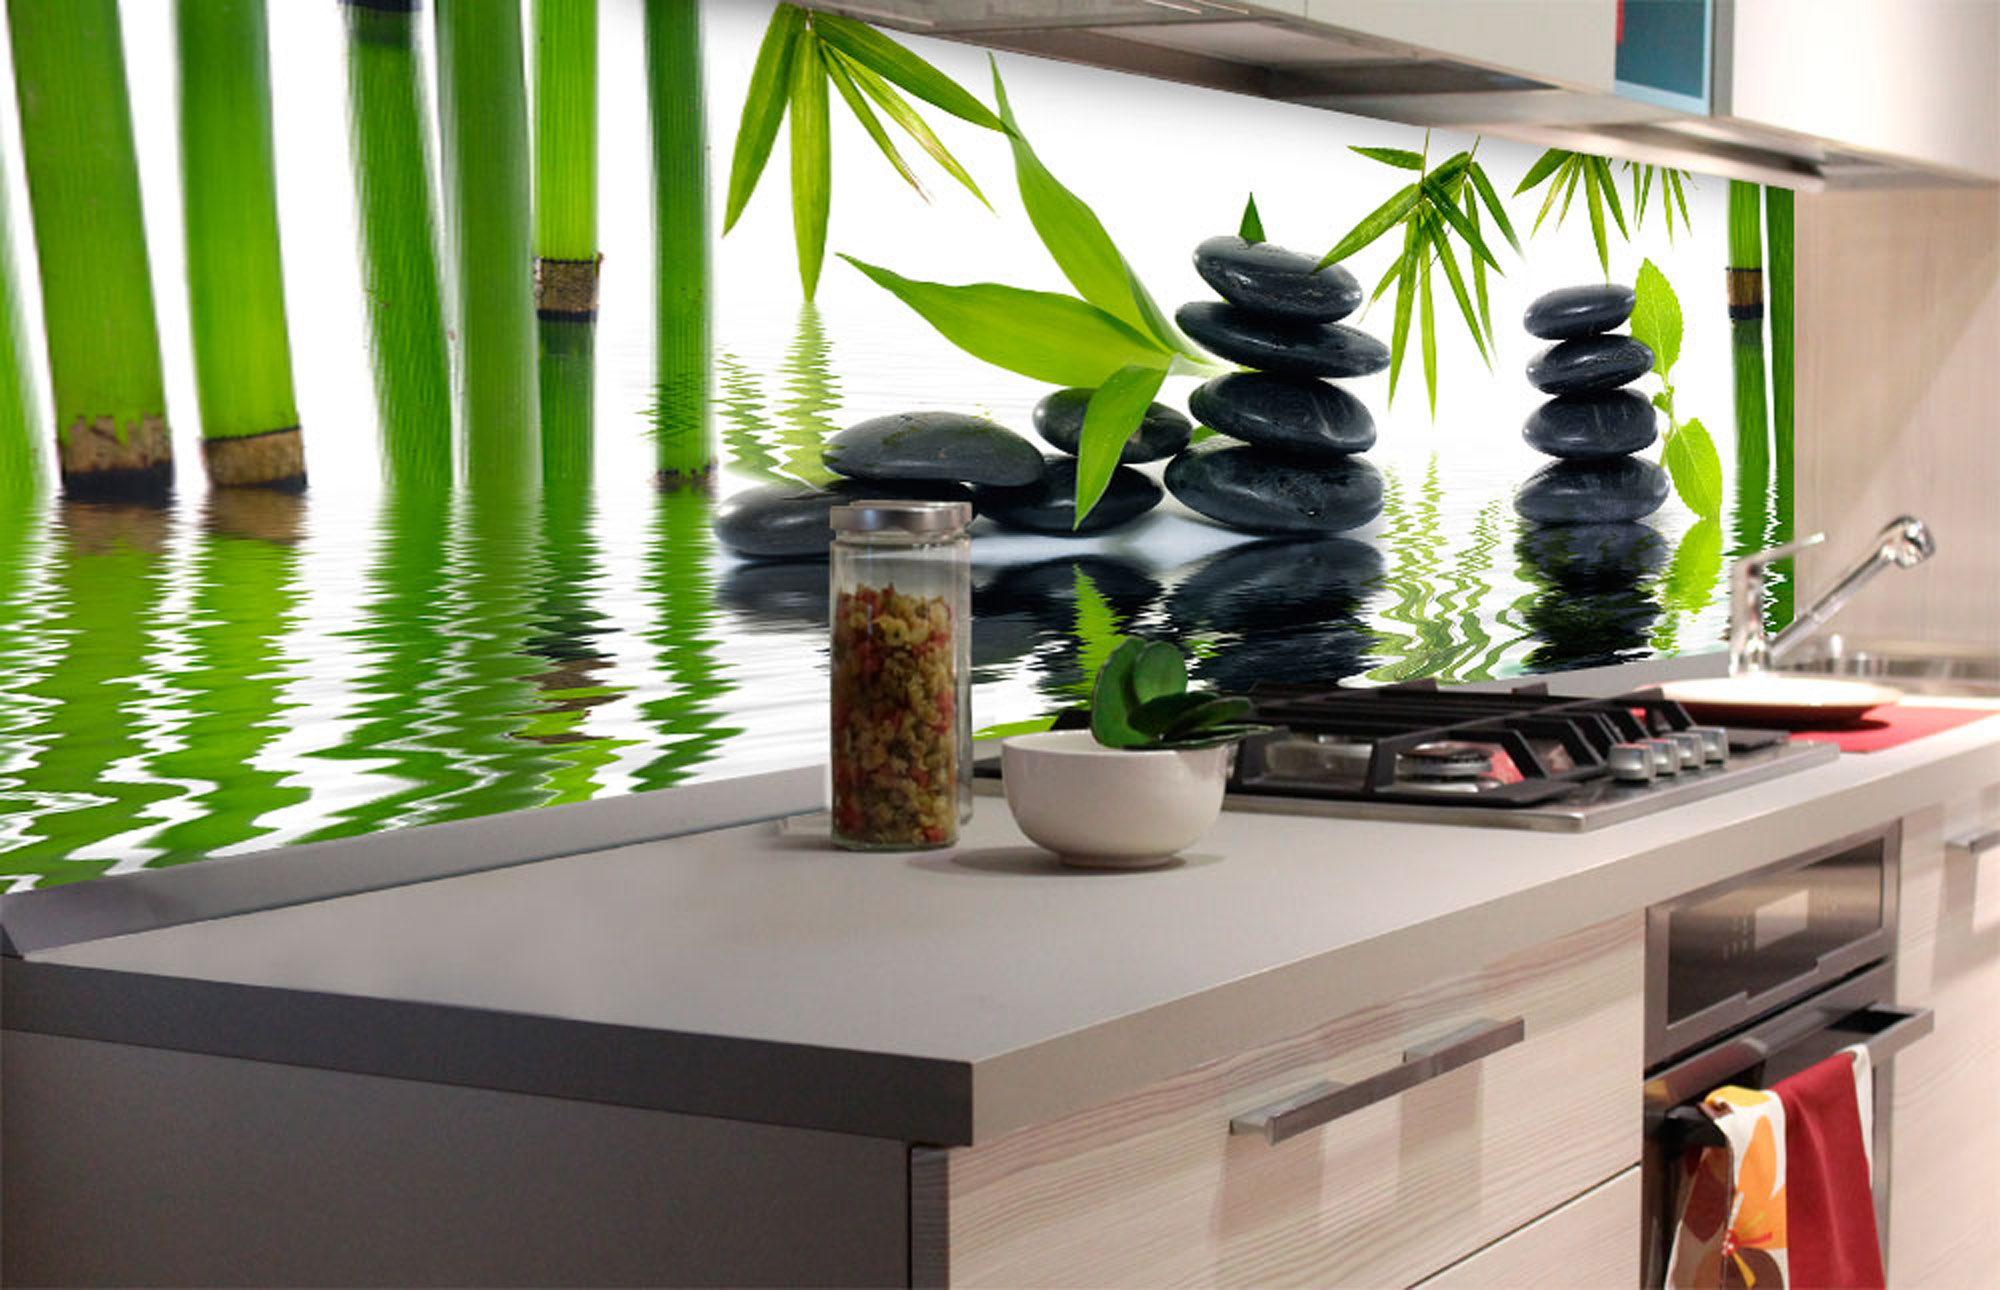 selbstklebende Kunststoff Folie als Spritzschutz für Küchen Wände aus Berlin kaufen